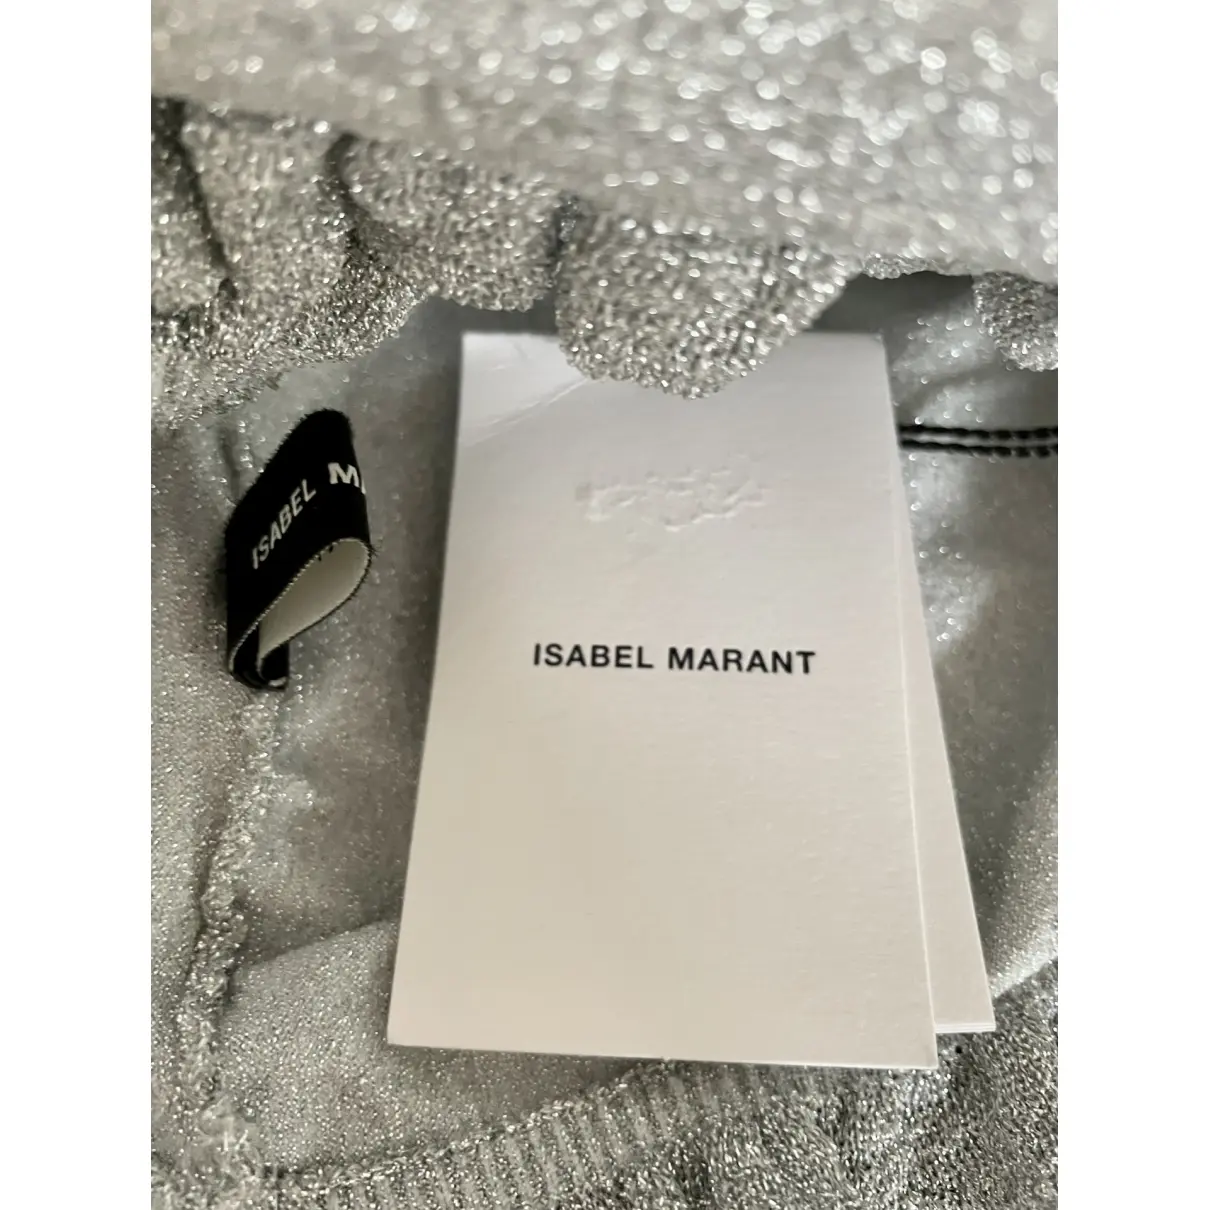 Buy Isabel Marant Corset online